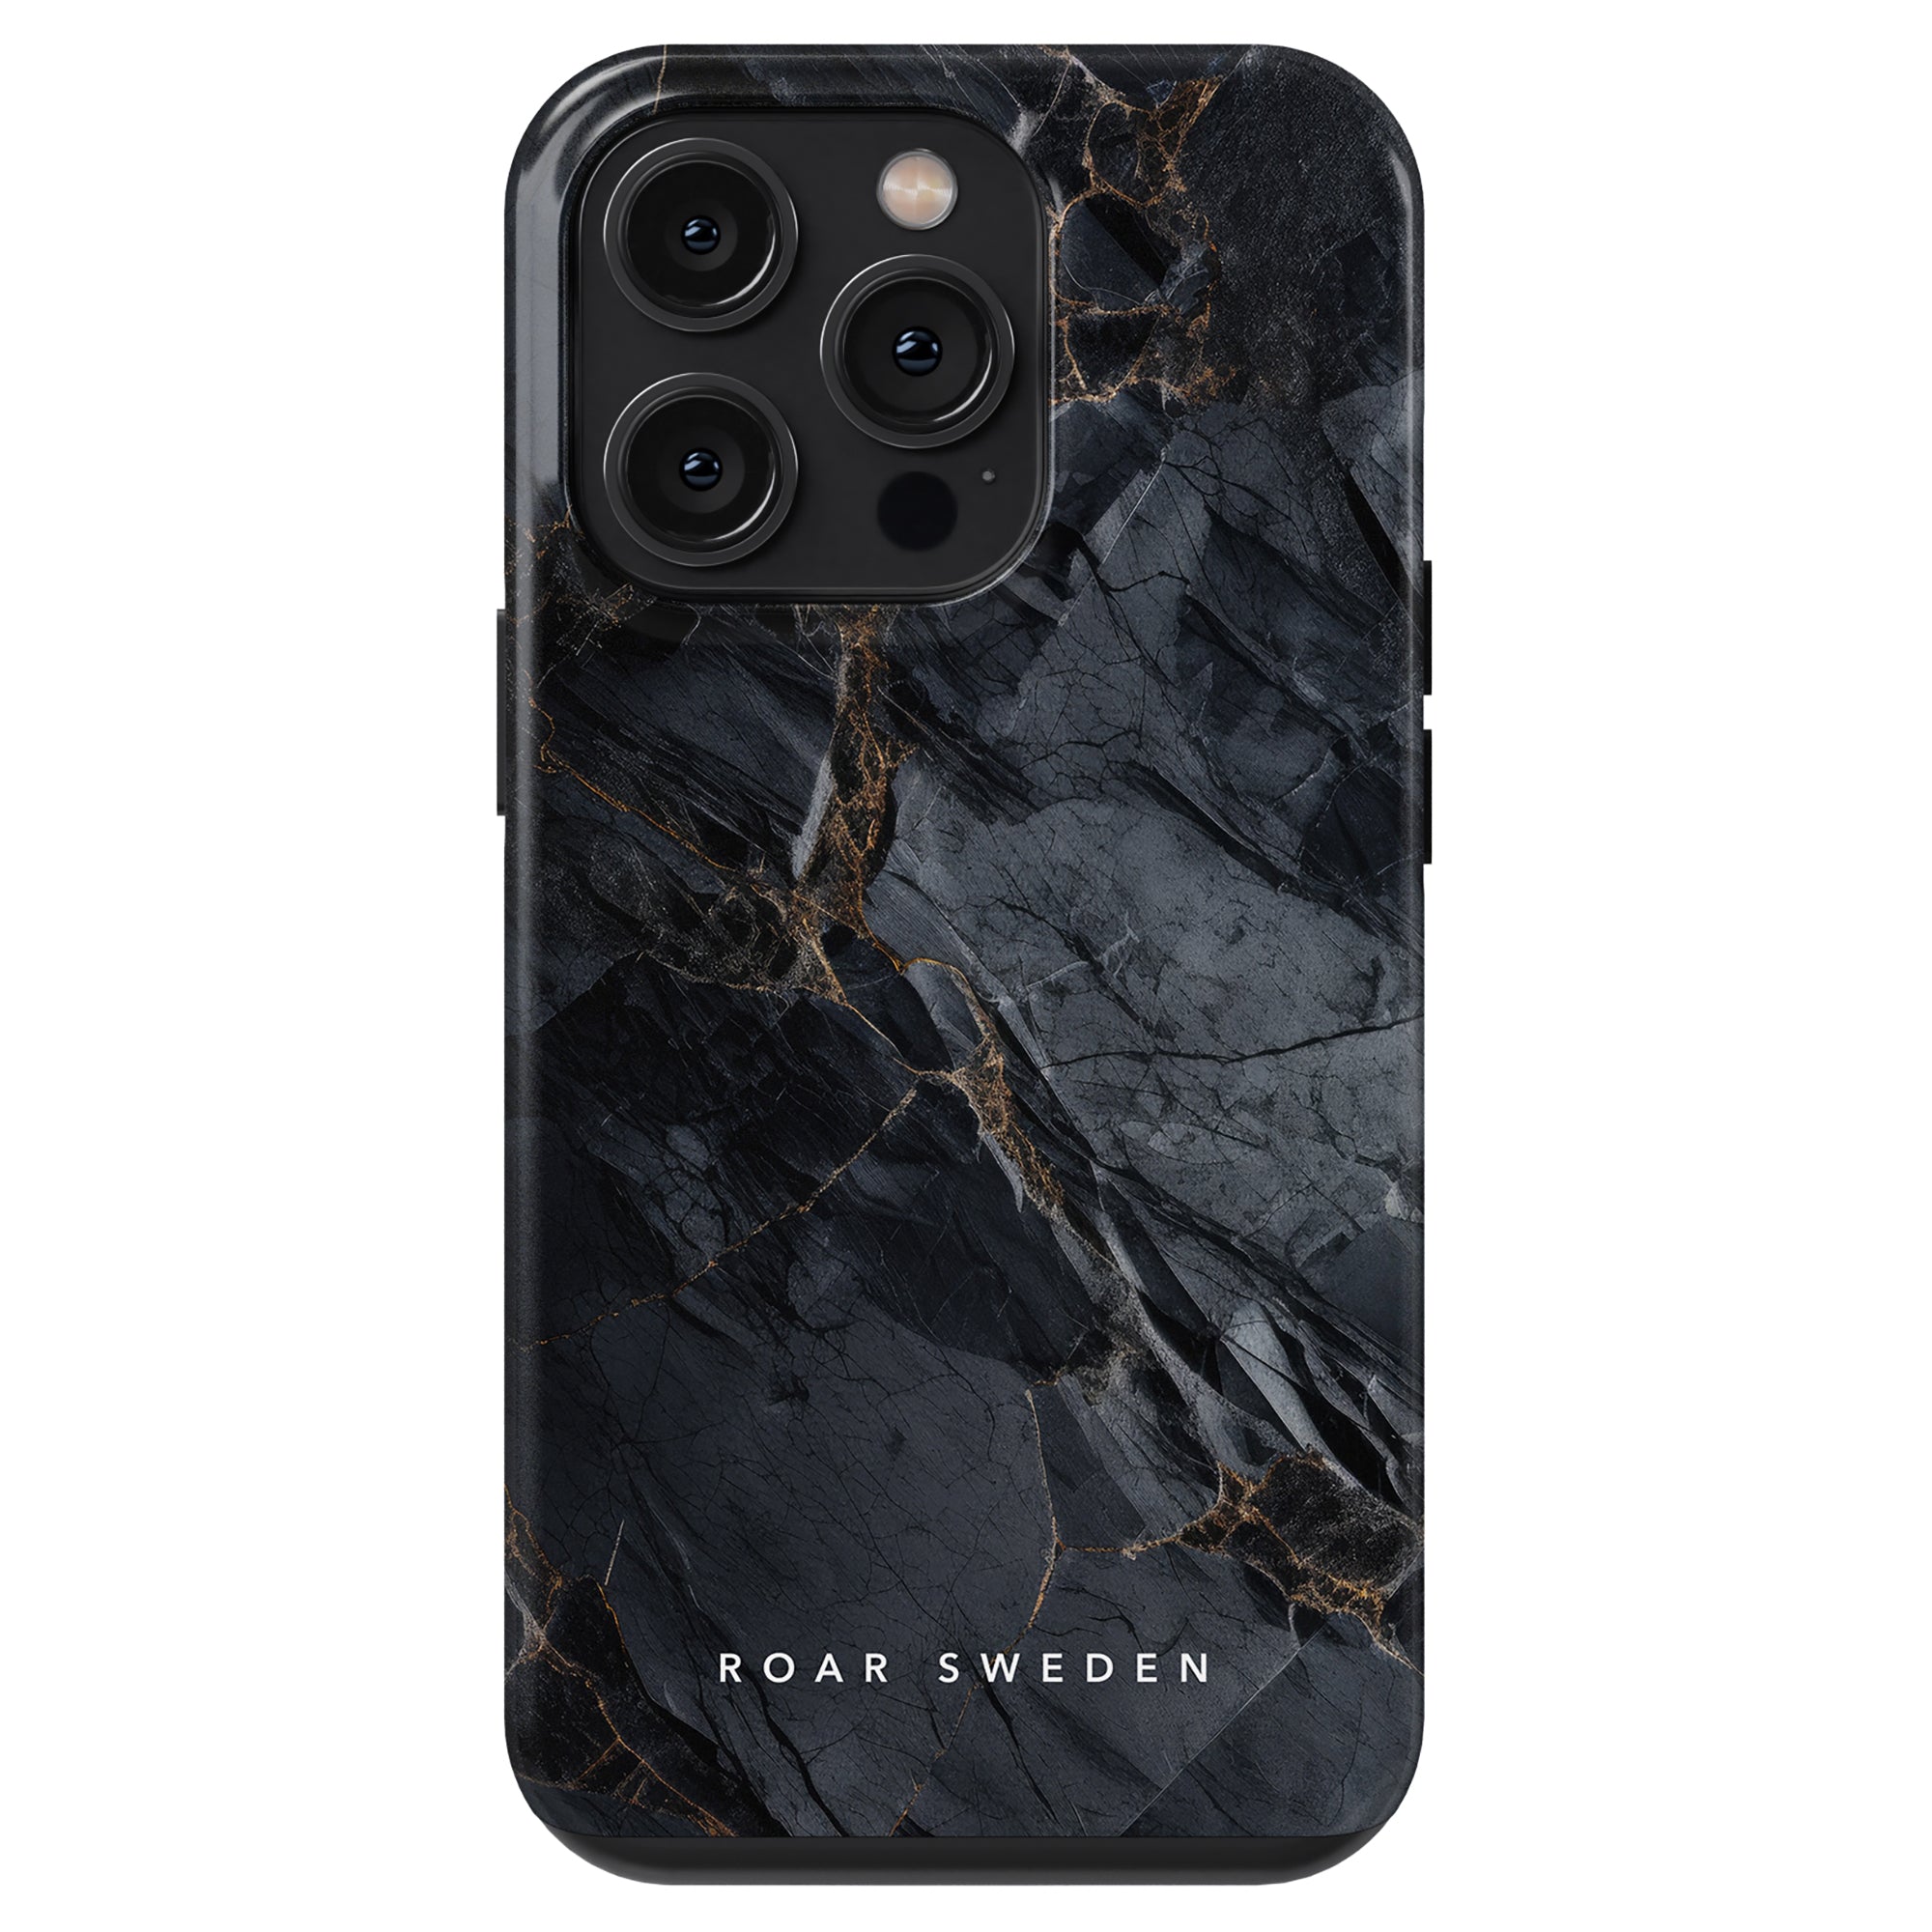 Ett elegant granit - Tufft fodral för iPhone 11 Pro, med en sofistikerad svart finish.